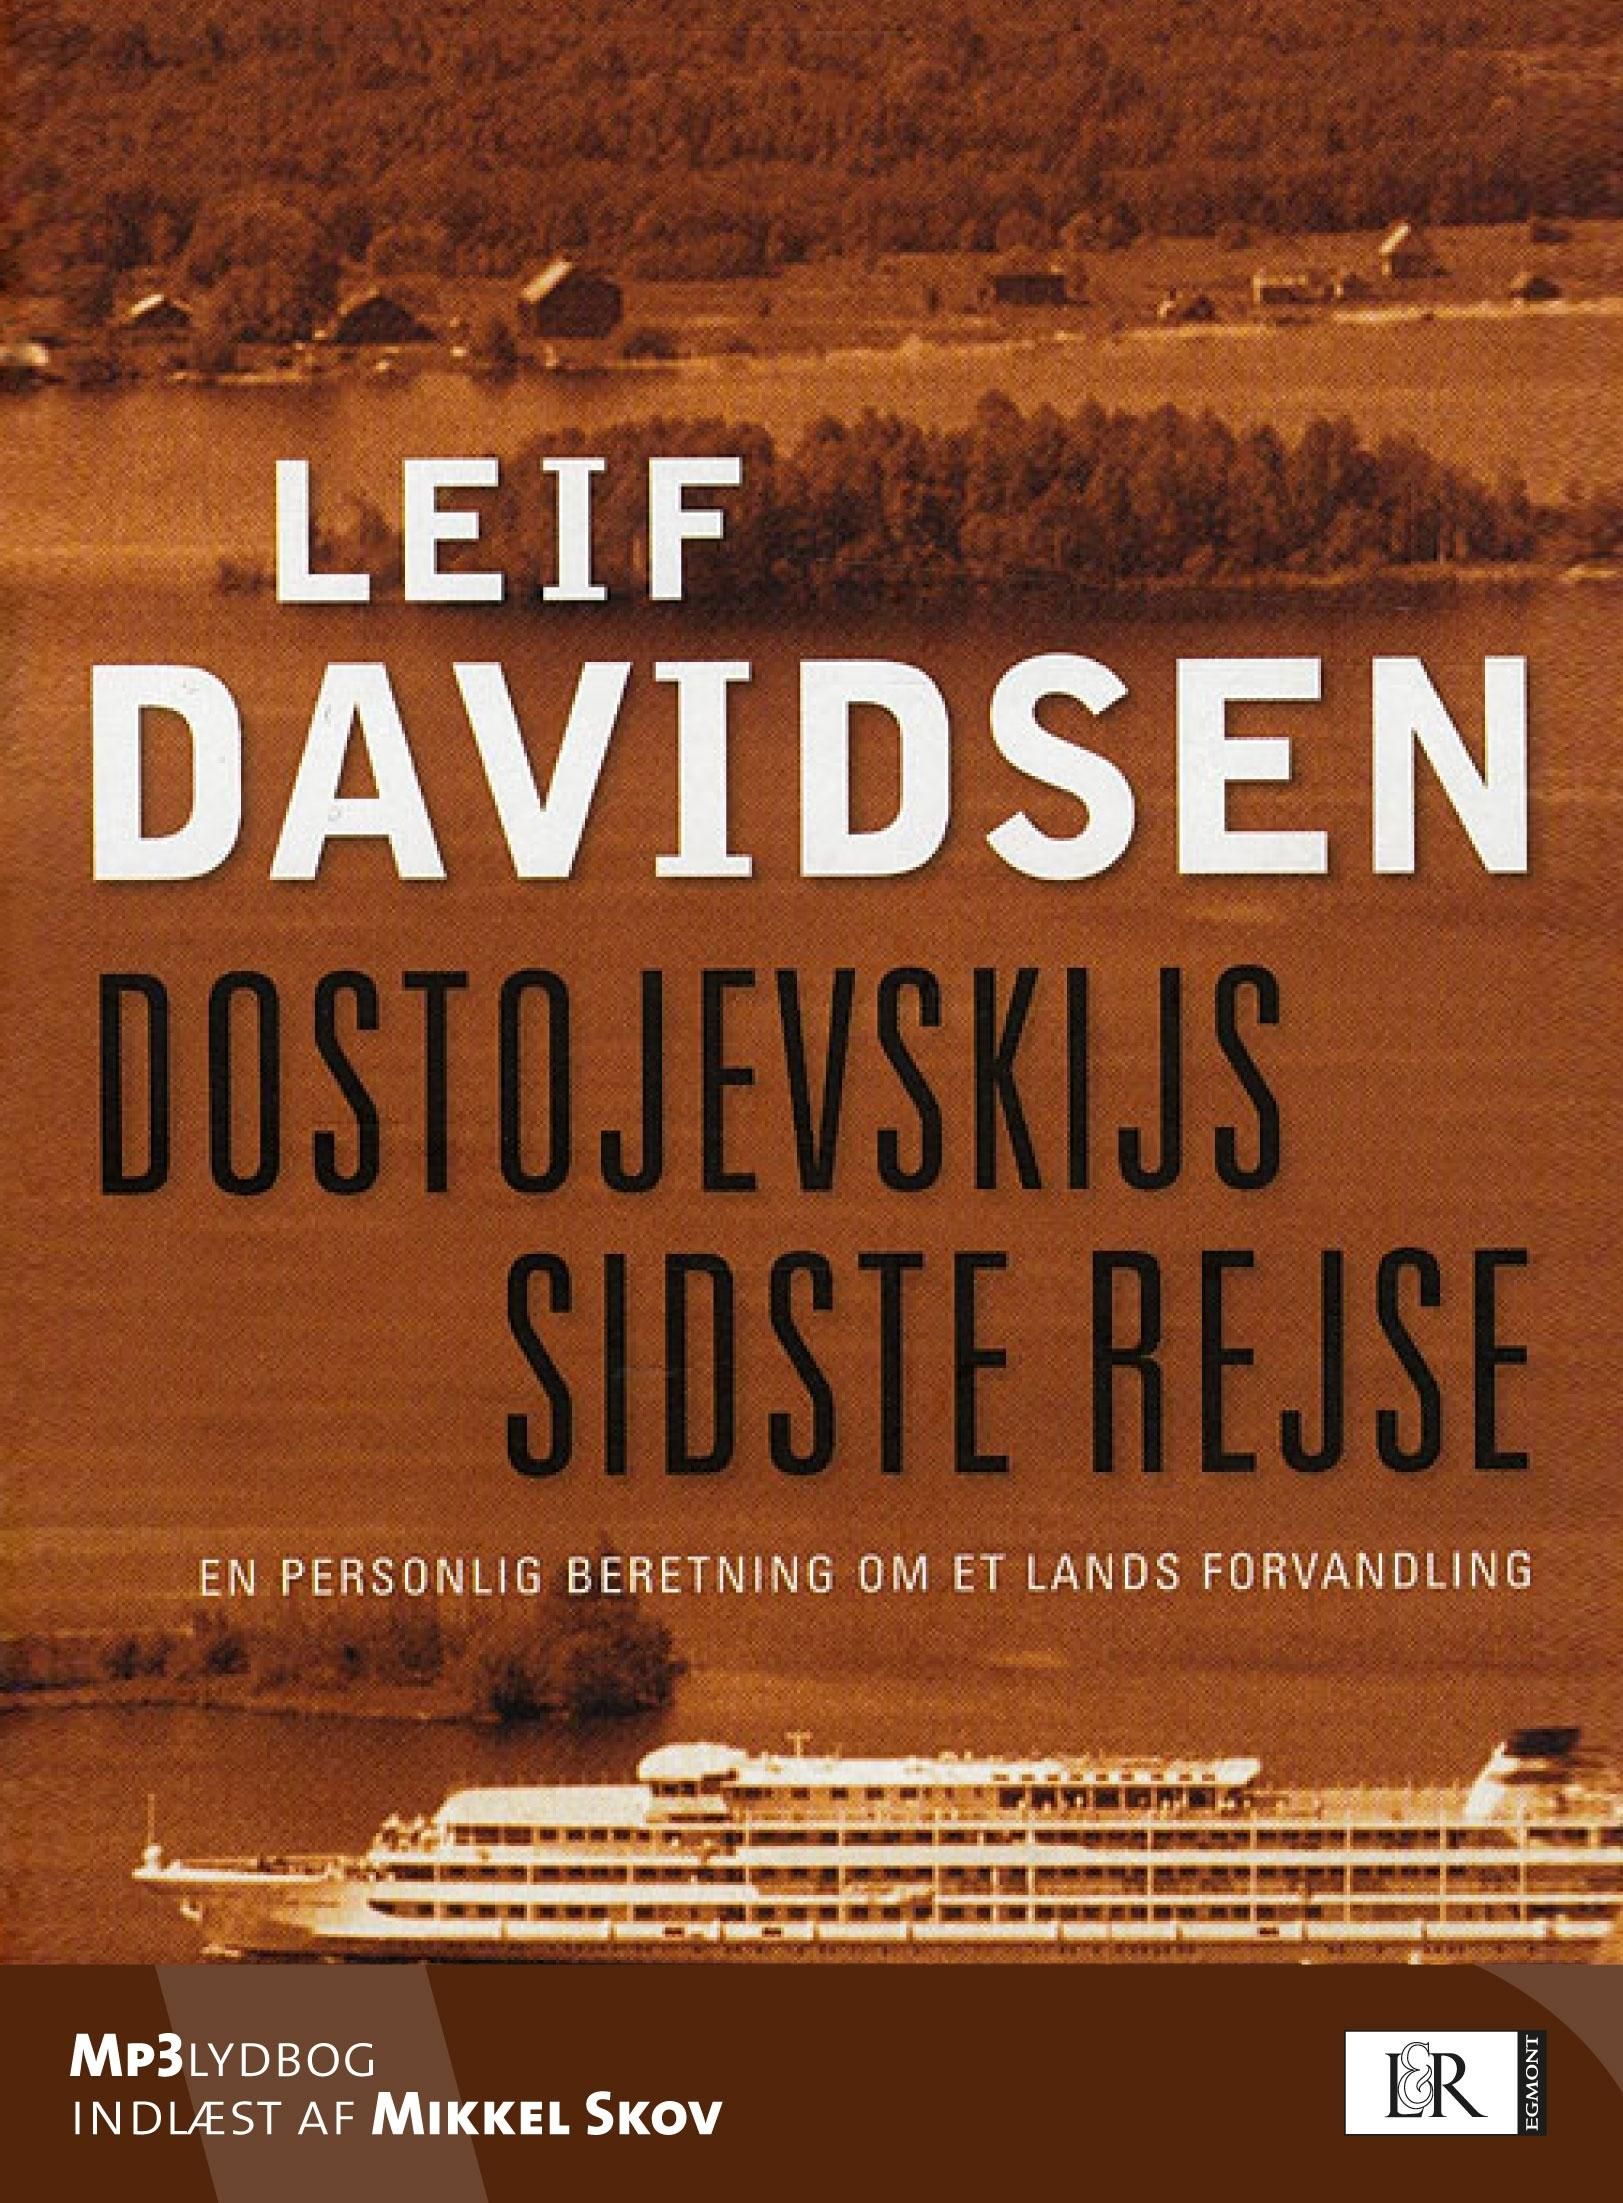 Dostojevskijs sidste rejse. En personlig beretning om et lands forvandling, audiobook by Leif Davidsen